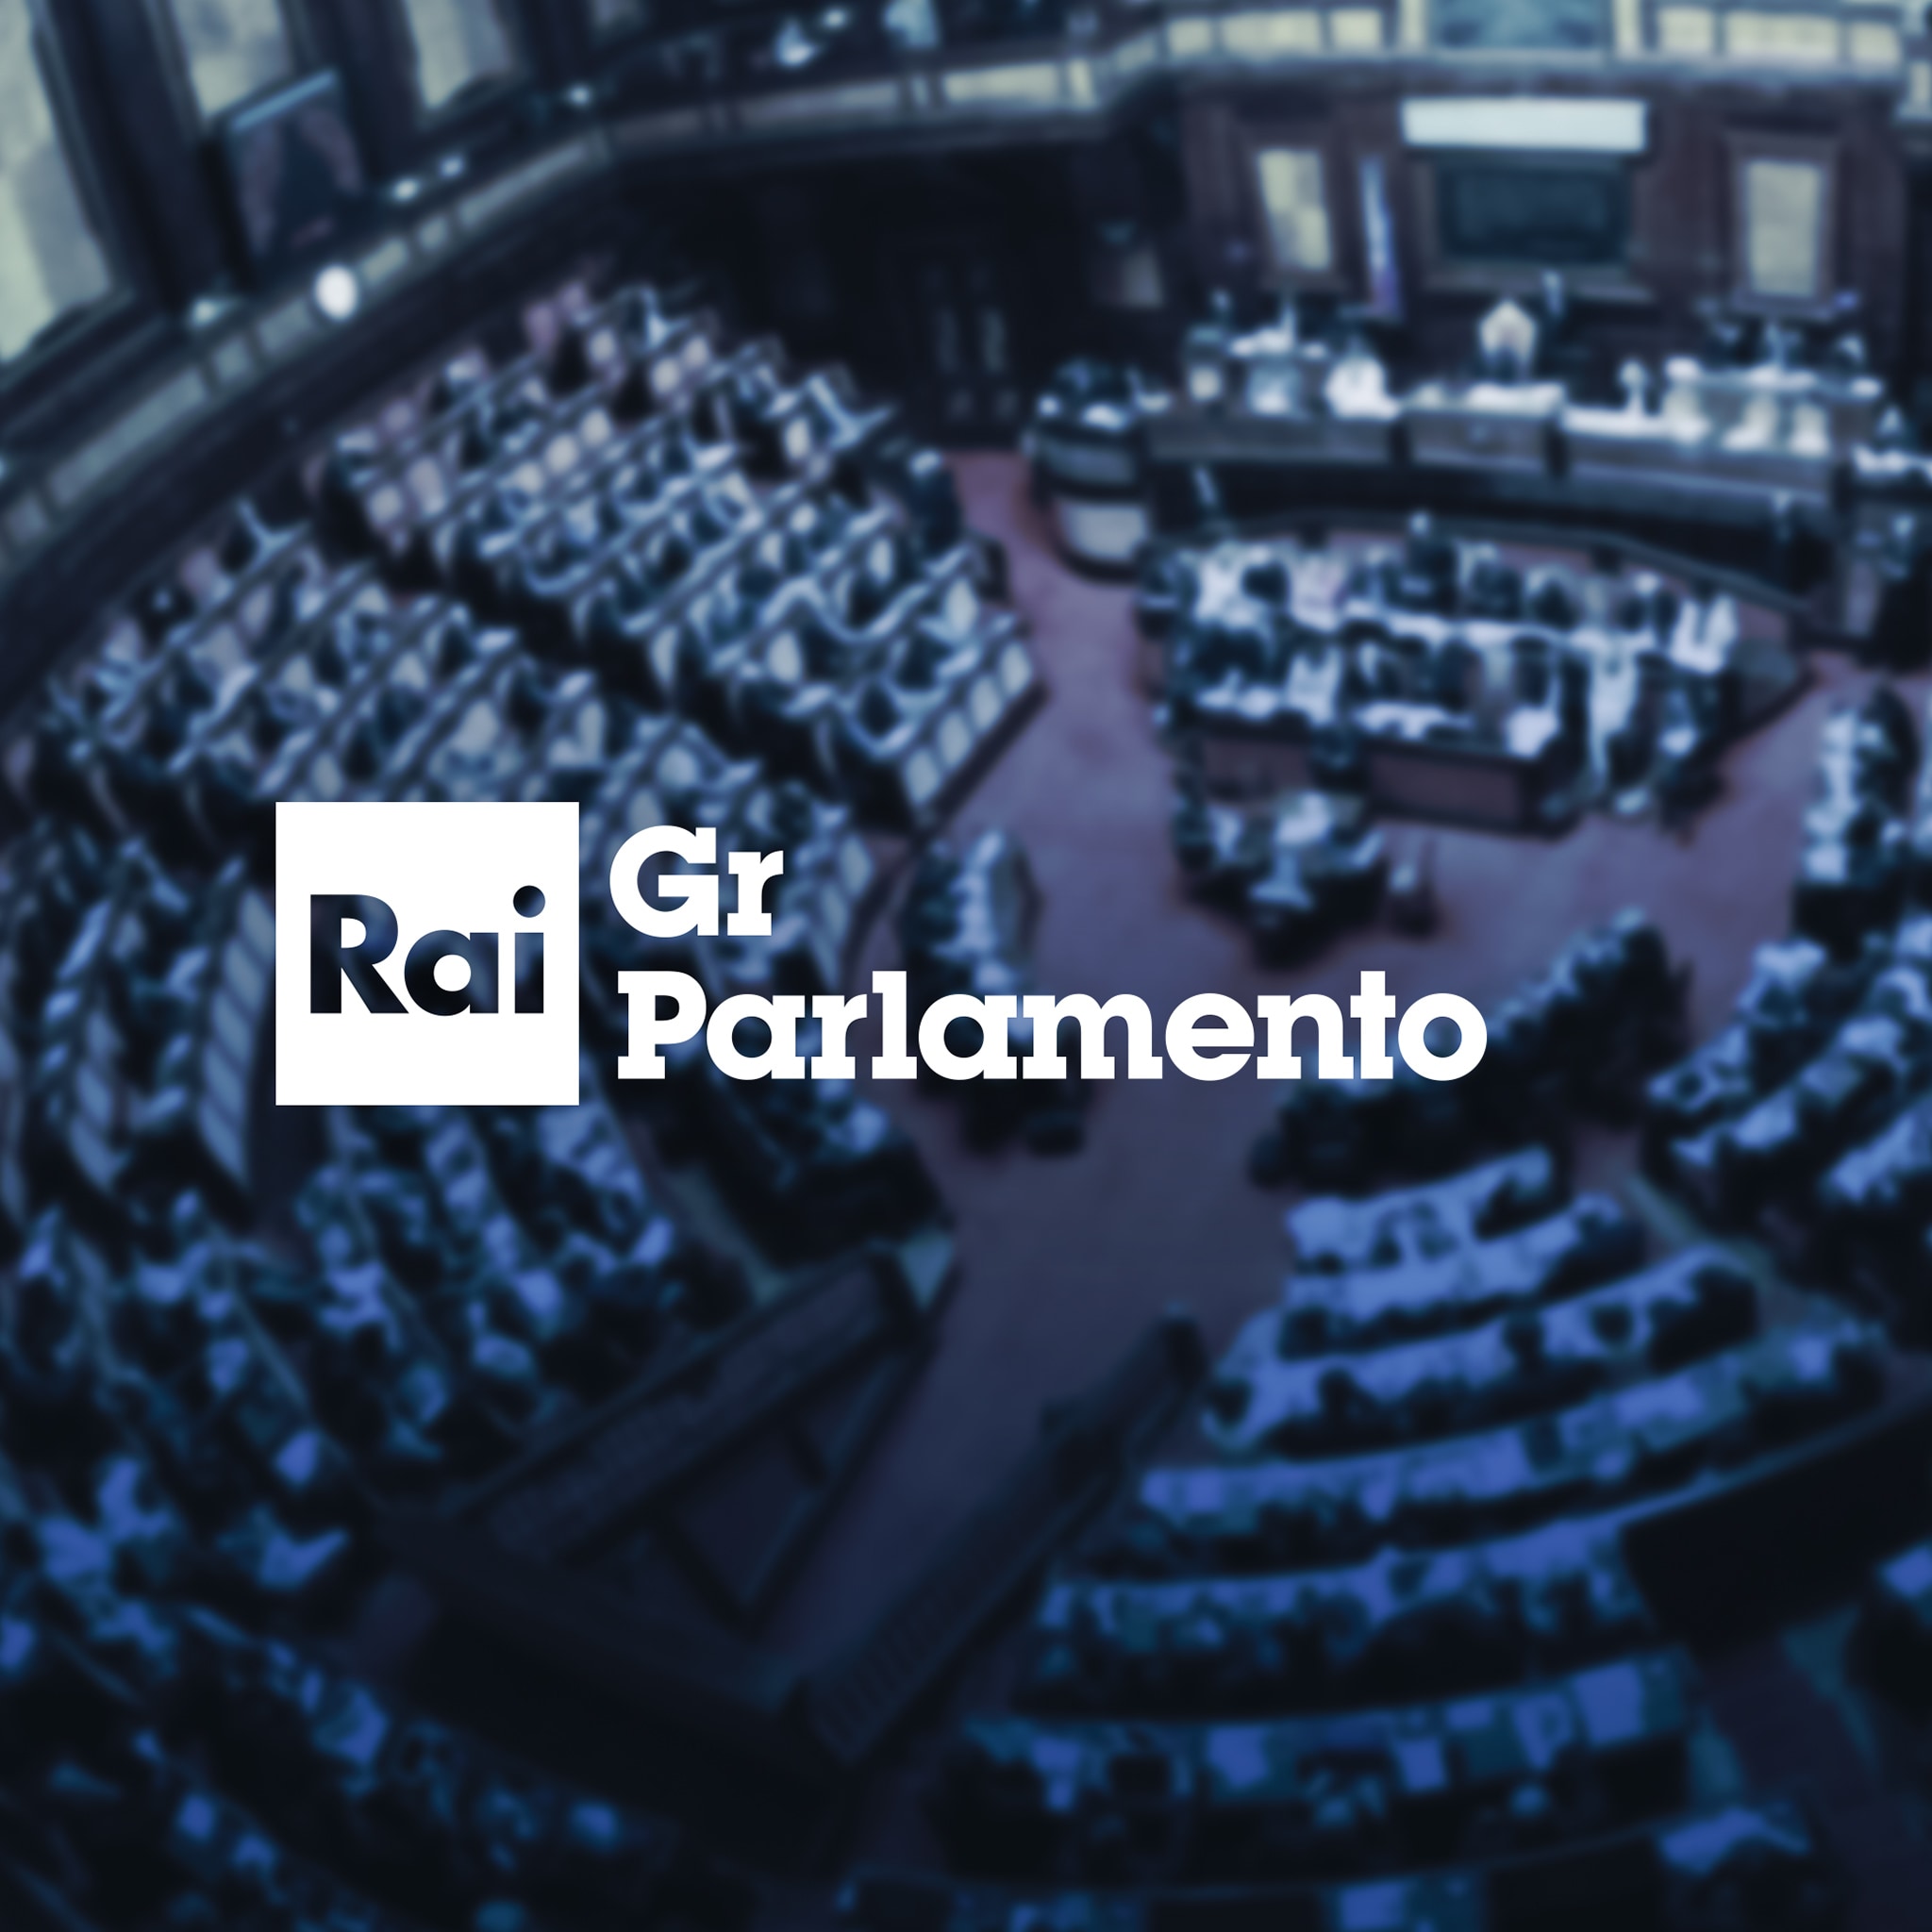 Rai Radio Tutta Italiana NOTTE ITALIANA SU Rai  Gr Parlamento